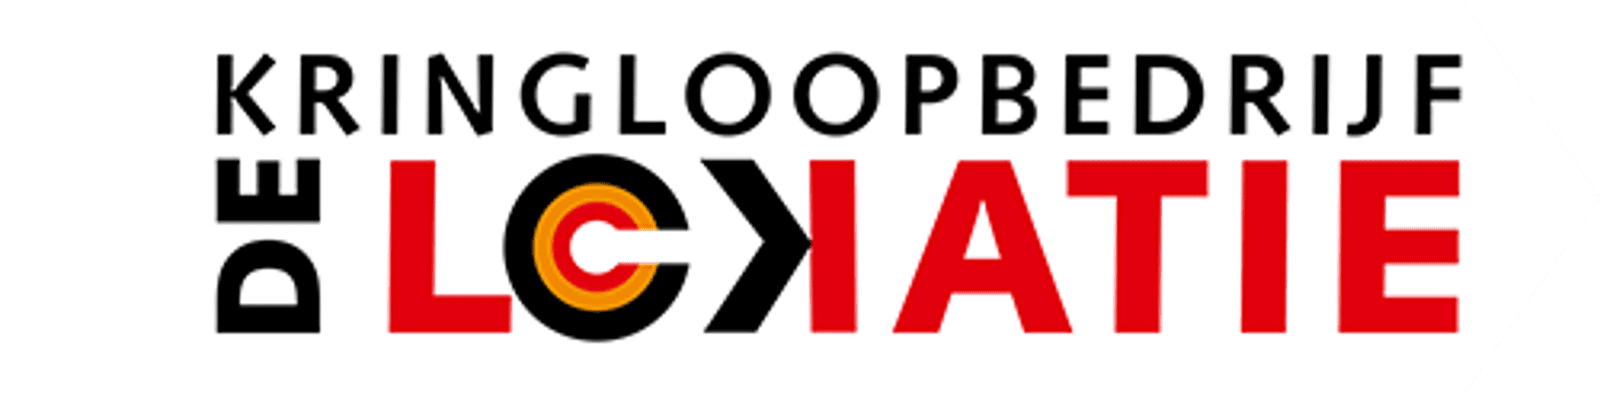 Kringloopbedrijf De Lokatie logo